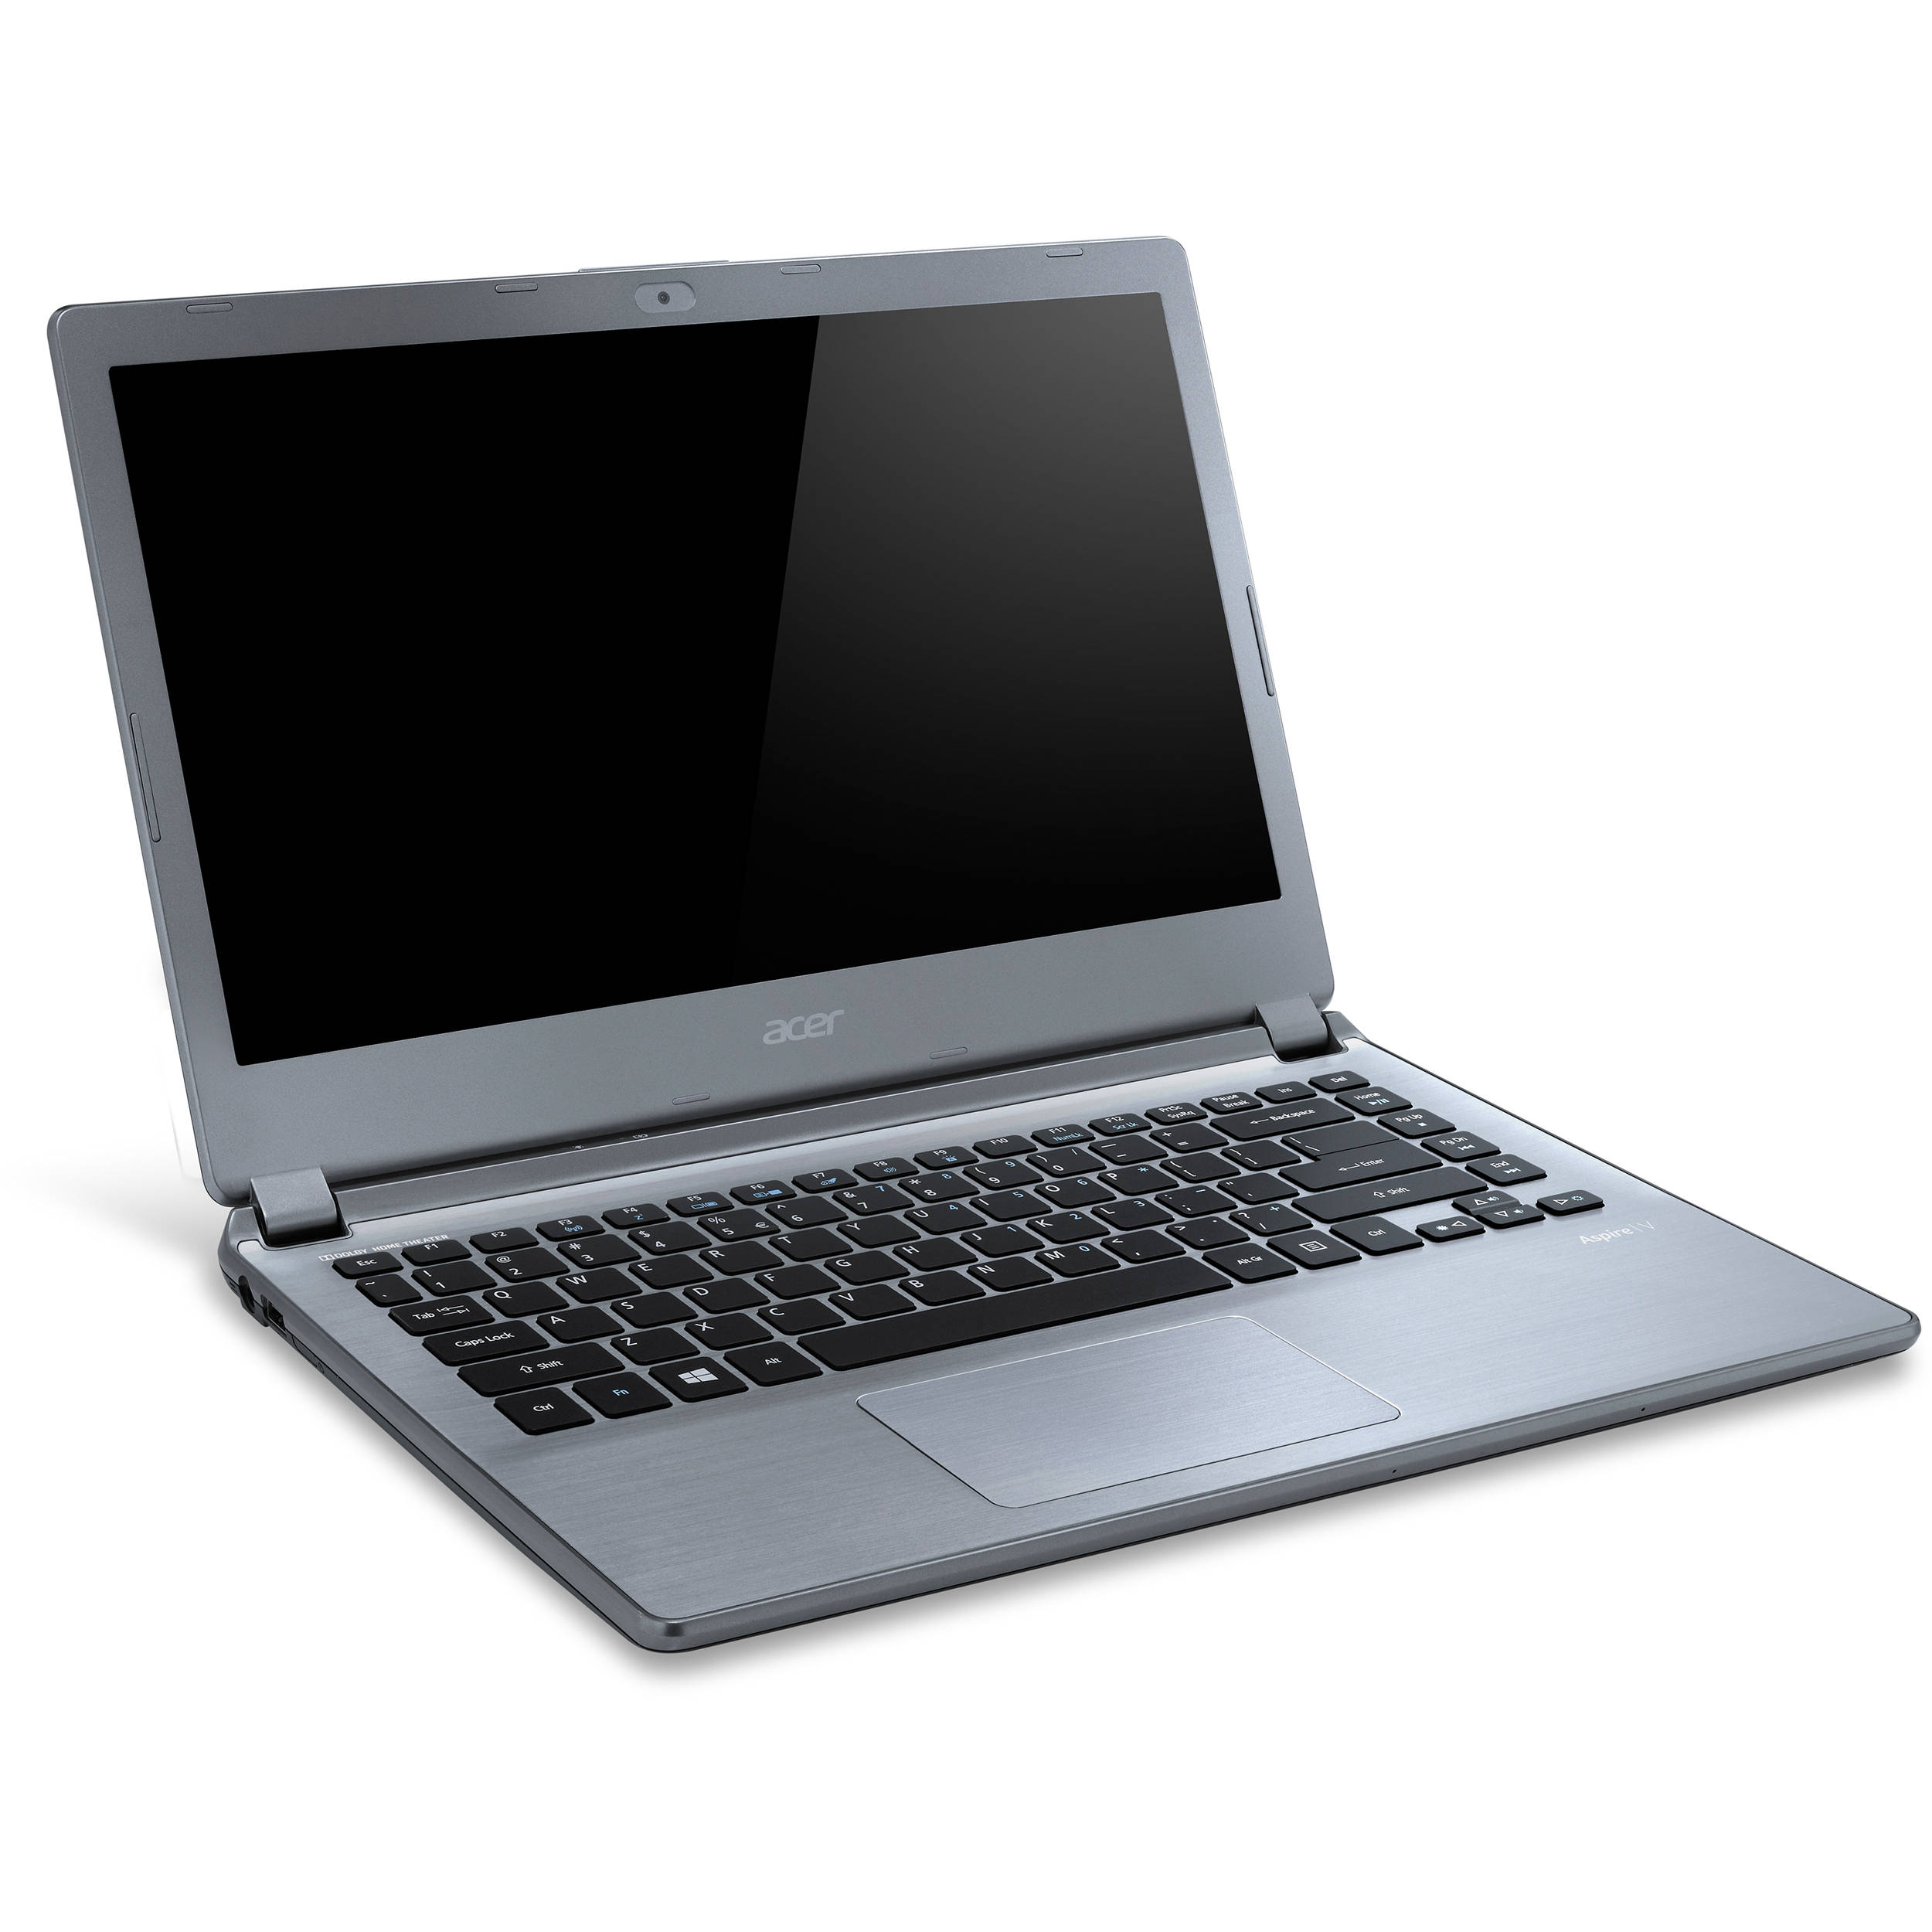 Acer Aspire V7-581 Notebook